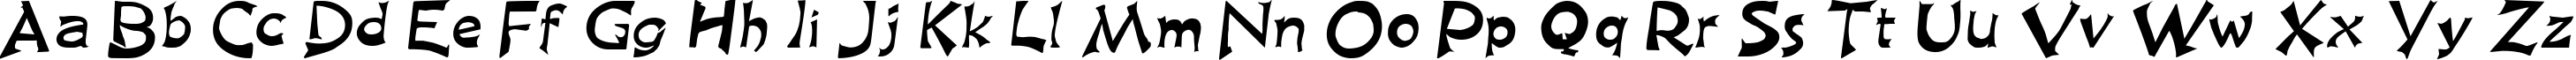 Пример написания английского алфавита шрифтом King Arthur Special Normal